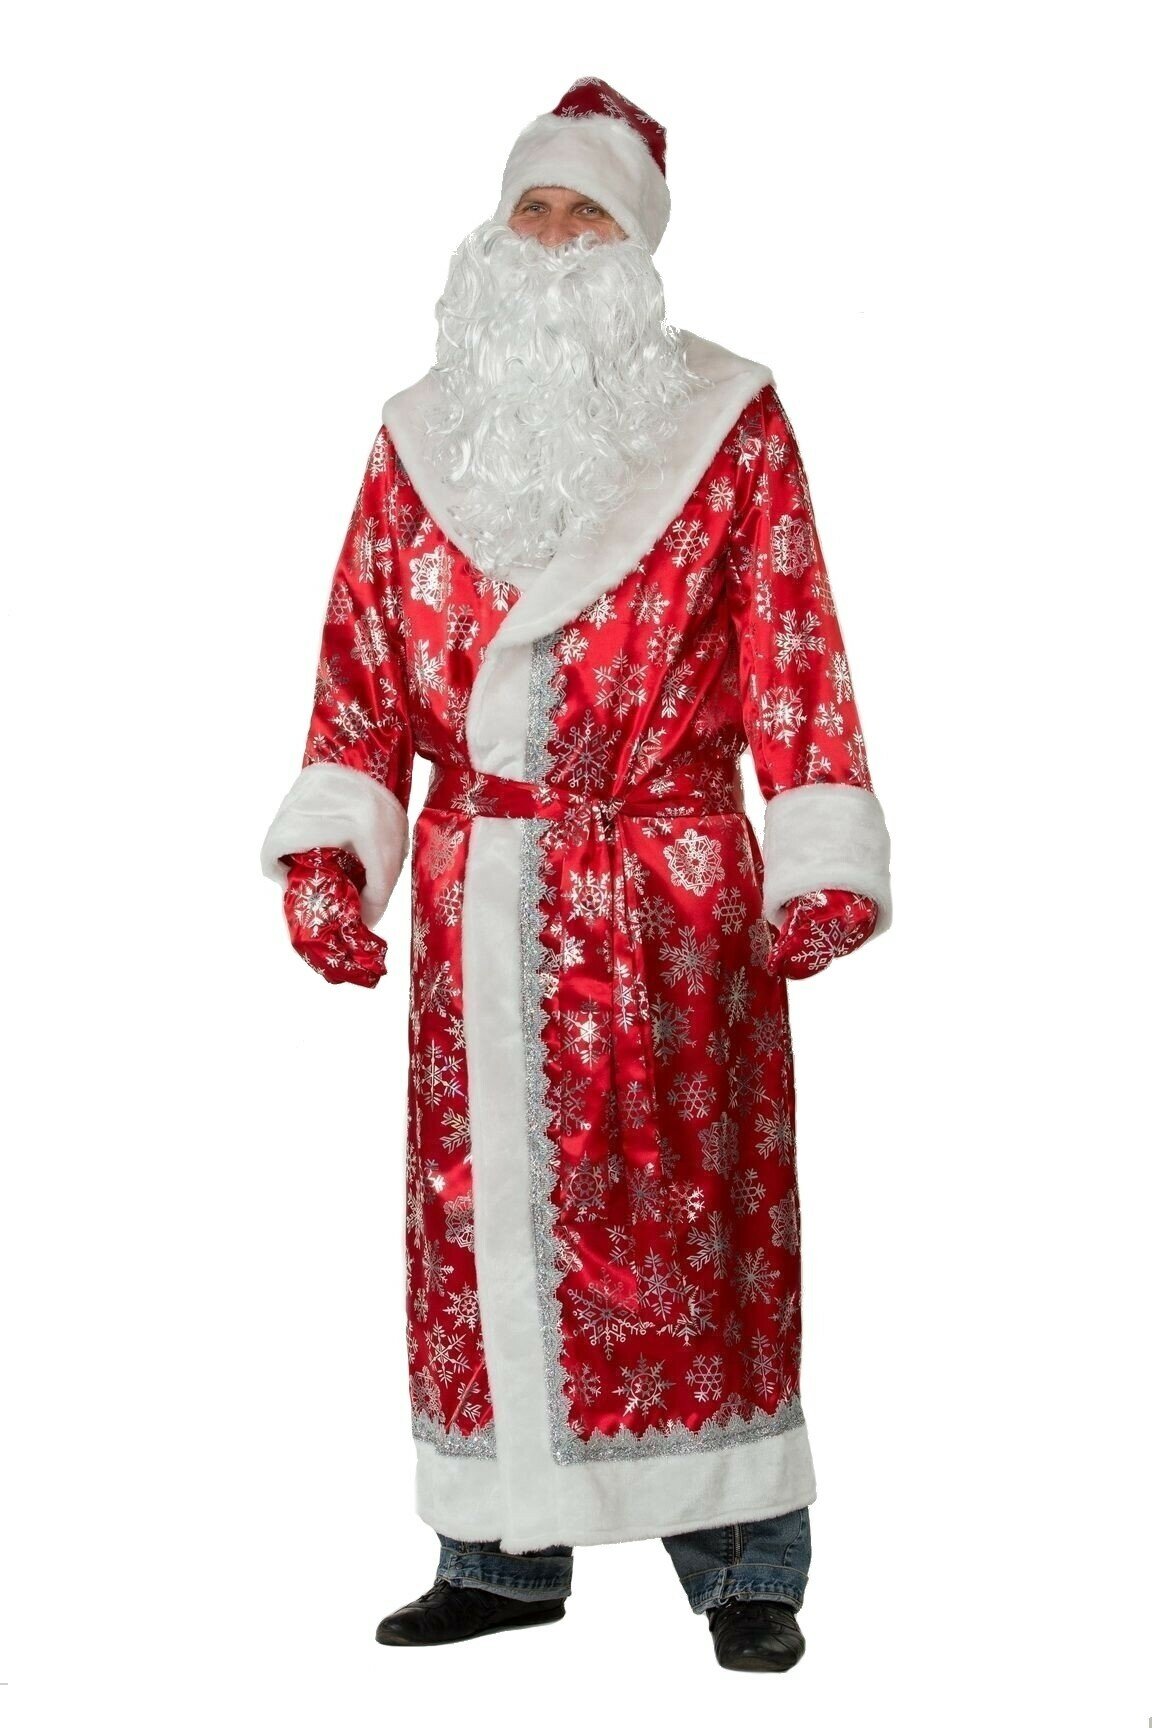 Сатиновый красный костюм Деда Мороза